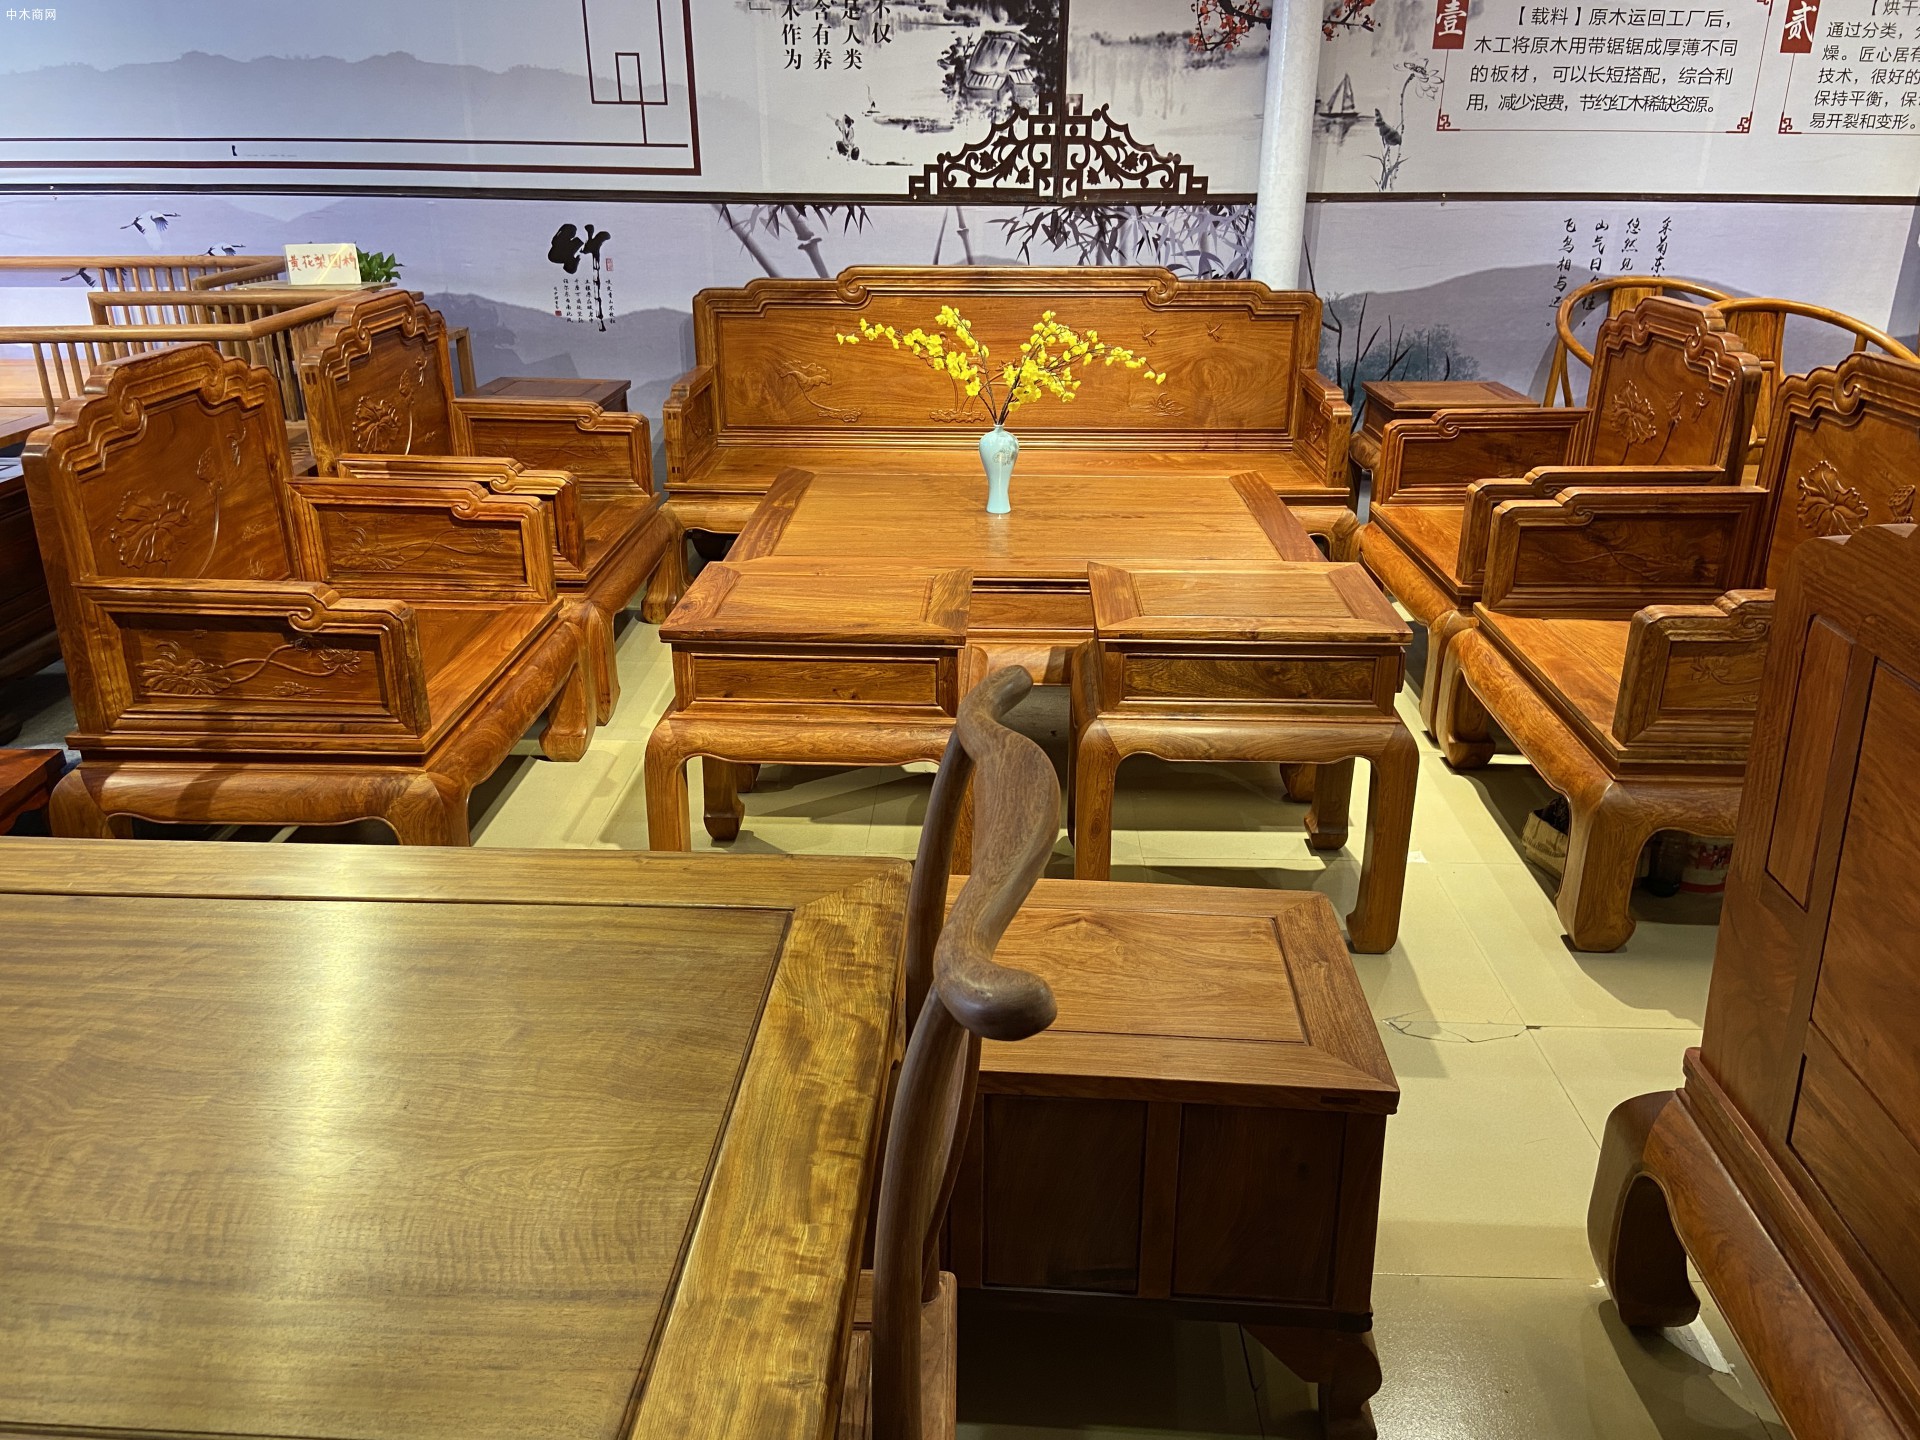 缅甸花梨宝座沙发十件套出厂价41800元厂家